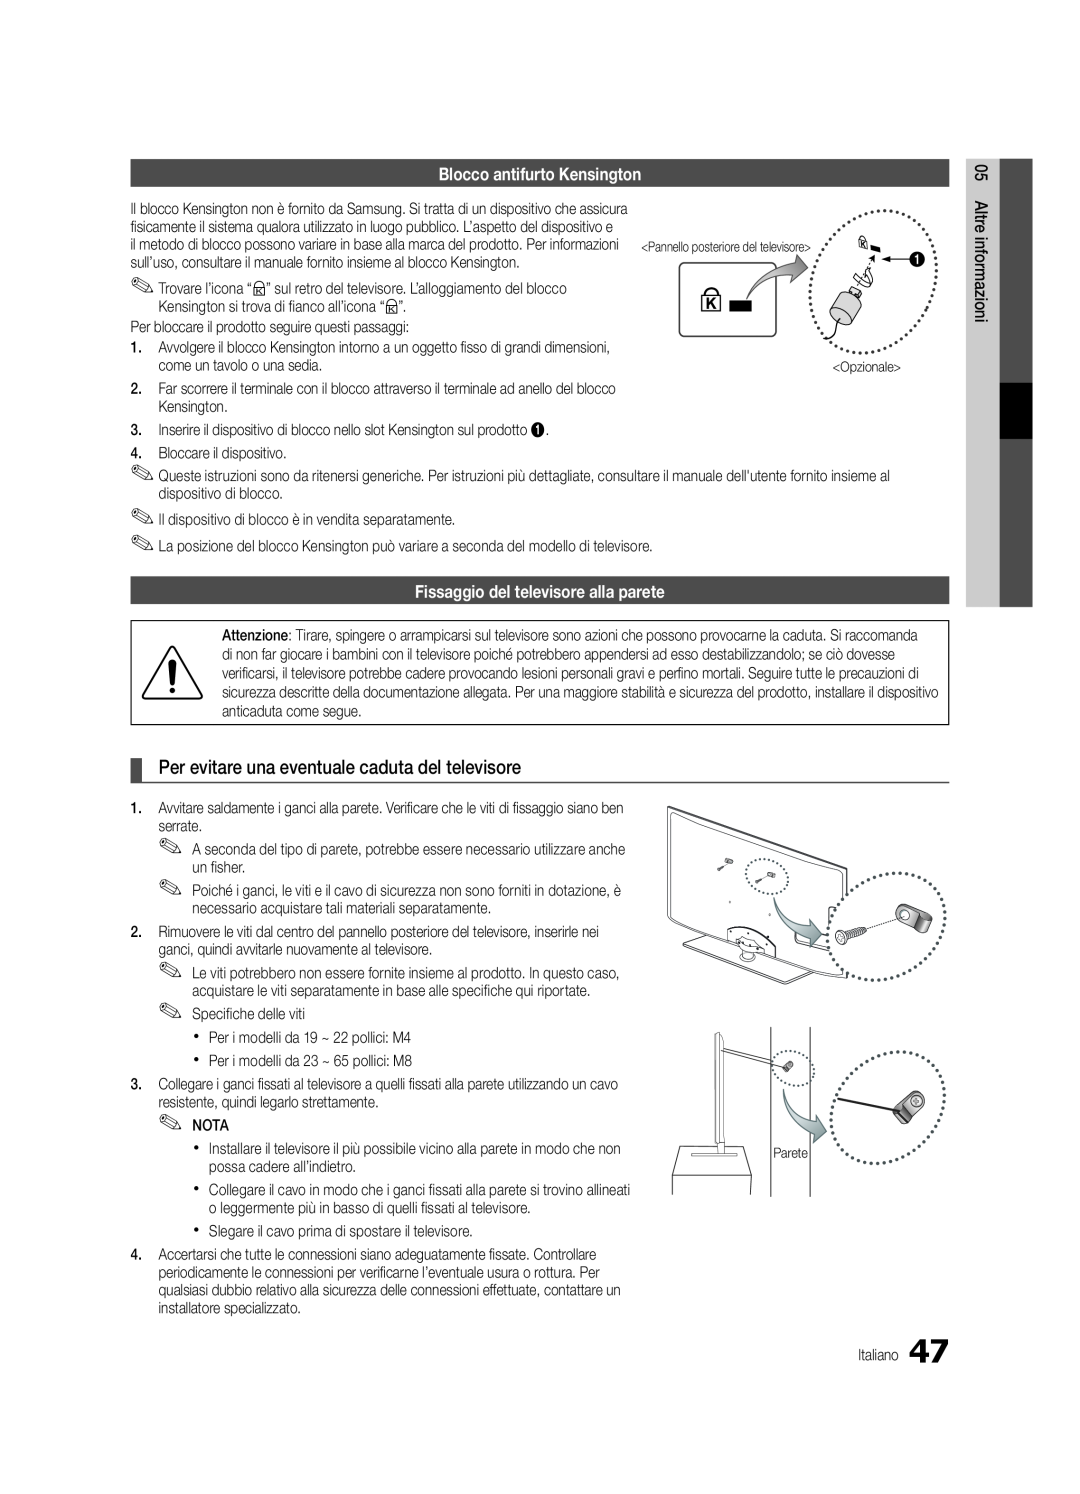 Samsung UE46C5700QSXZG, UE37C5700QSXZG manual Per evitare una eventuale caduta del televisore, Blocco antifurto Kensington 